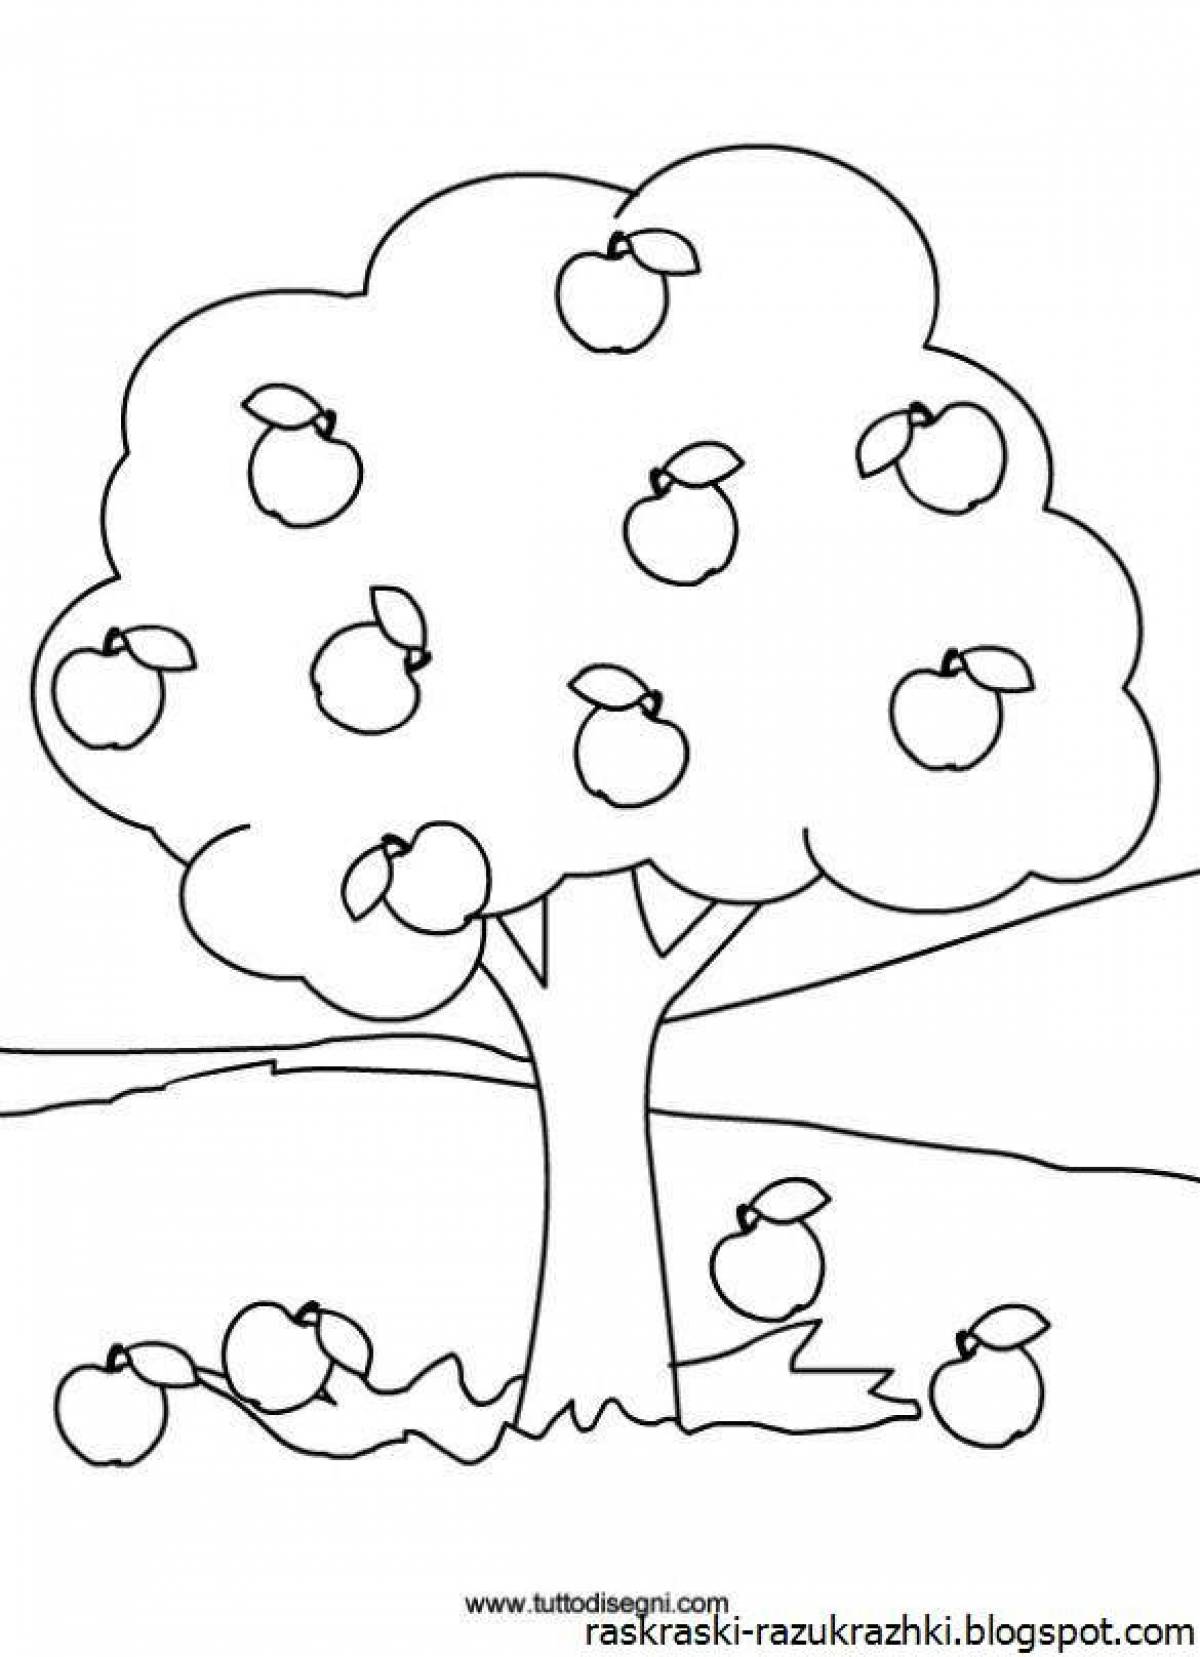 Раскраска яблоня с яблоками